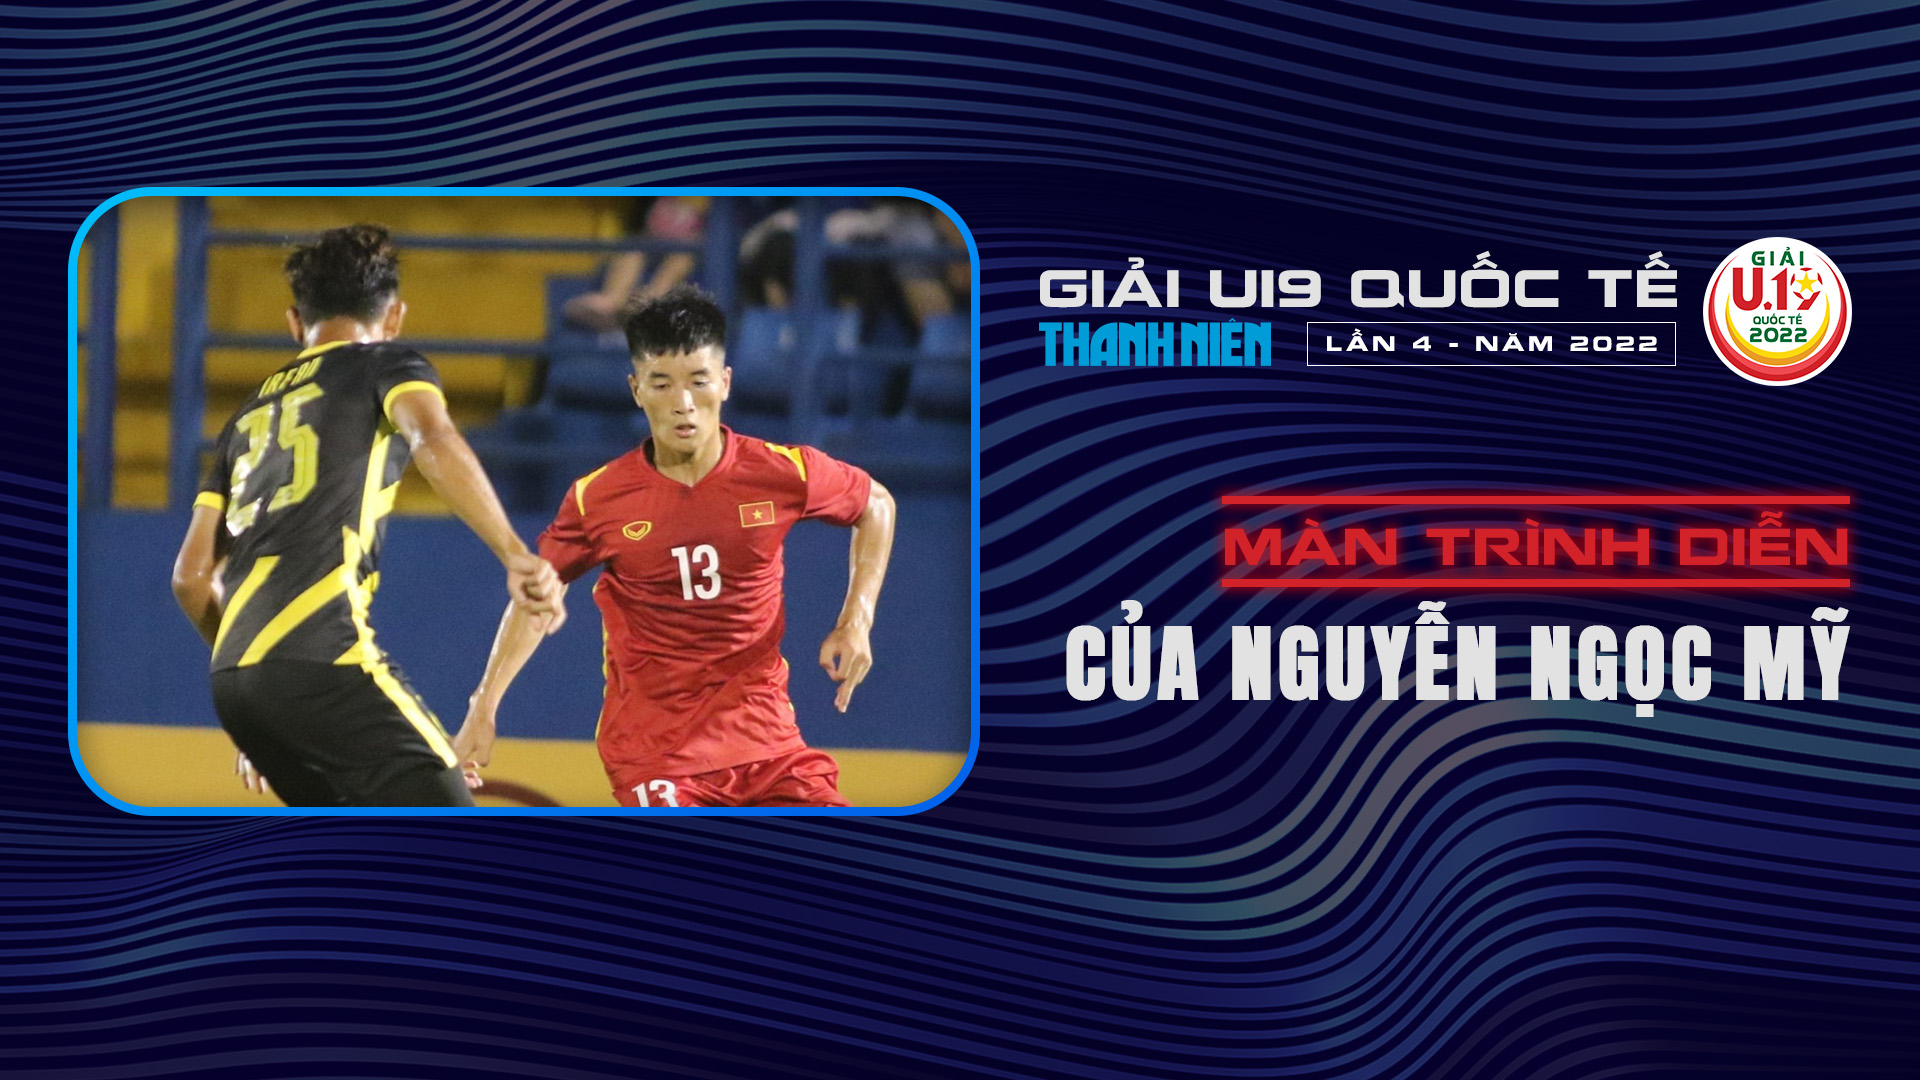 Màn trình diễn của Nguyễn Ngọc Mỹ tại U19 Quốc tế 2022 - U19 Quốc tế